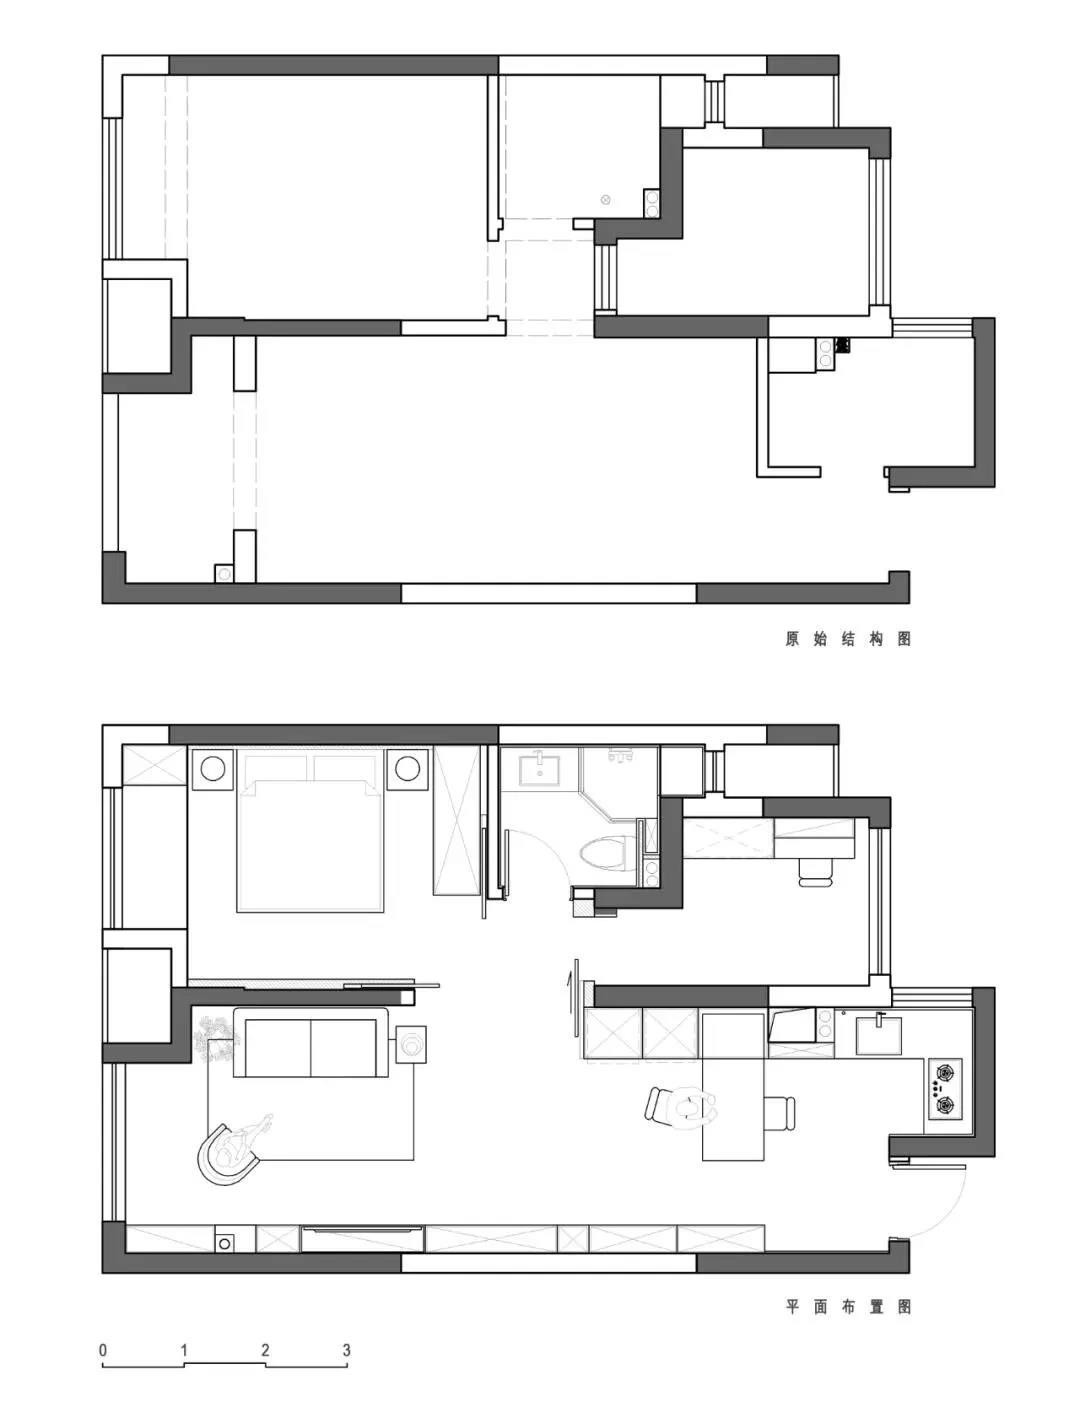 80现代两房装修效果图,80㎡两居室婚房装修案例效果图-美广网